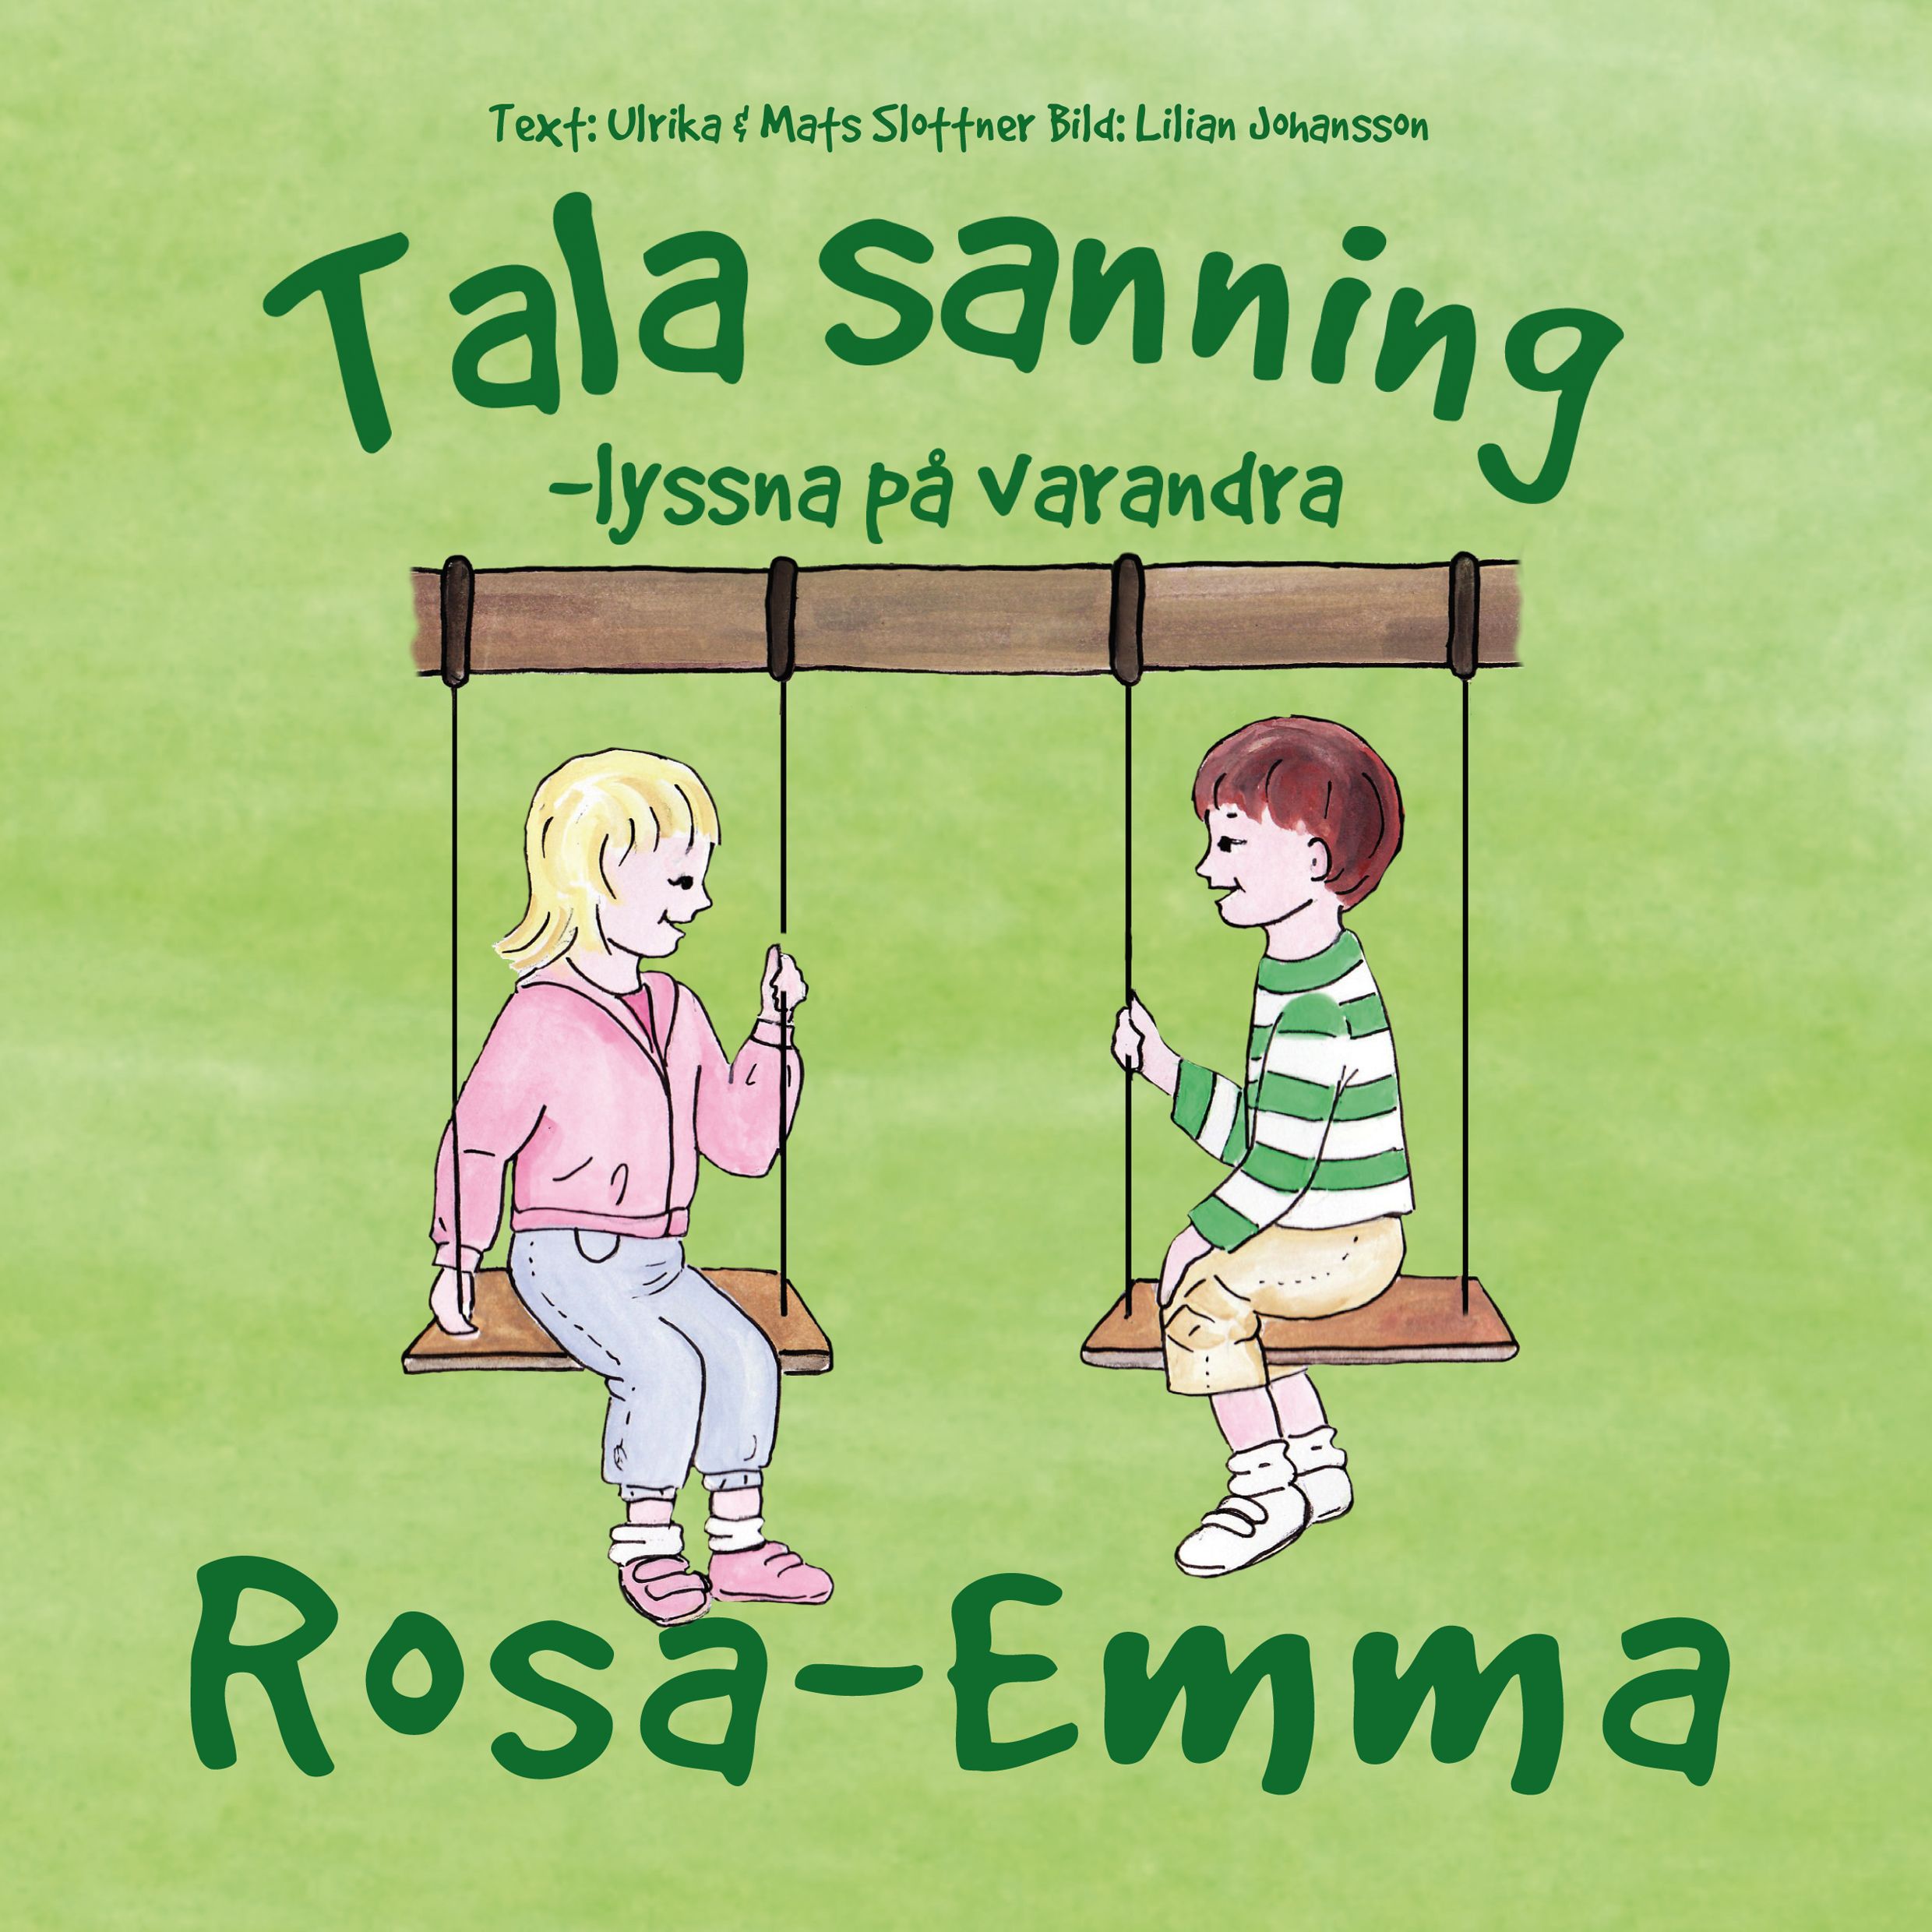 Tala sanning, eBook by Ulrika Slottner, Mats Slottner